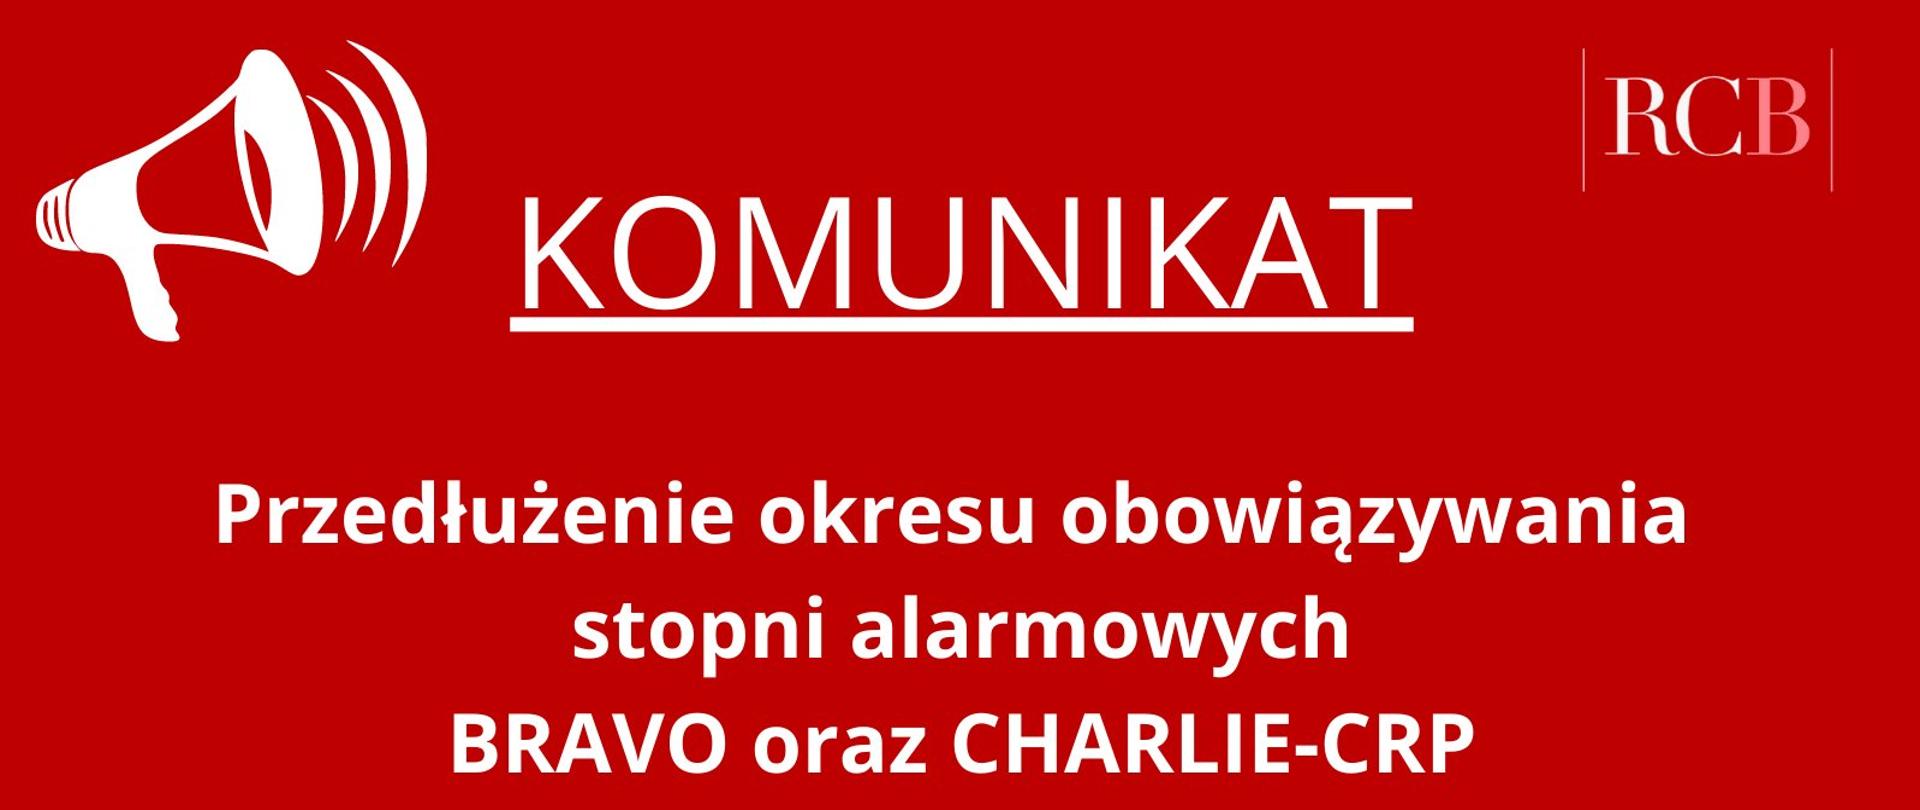 Czerwona plansza z symbolem megafonu, logo RCB i napisem: Przedłużenie stopni alarmowych BRAVO oraz CHARLIE-CRP do 30 kwietnia 2022 r. do godz. 23:59